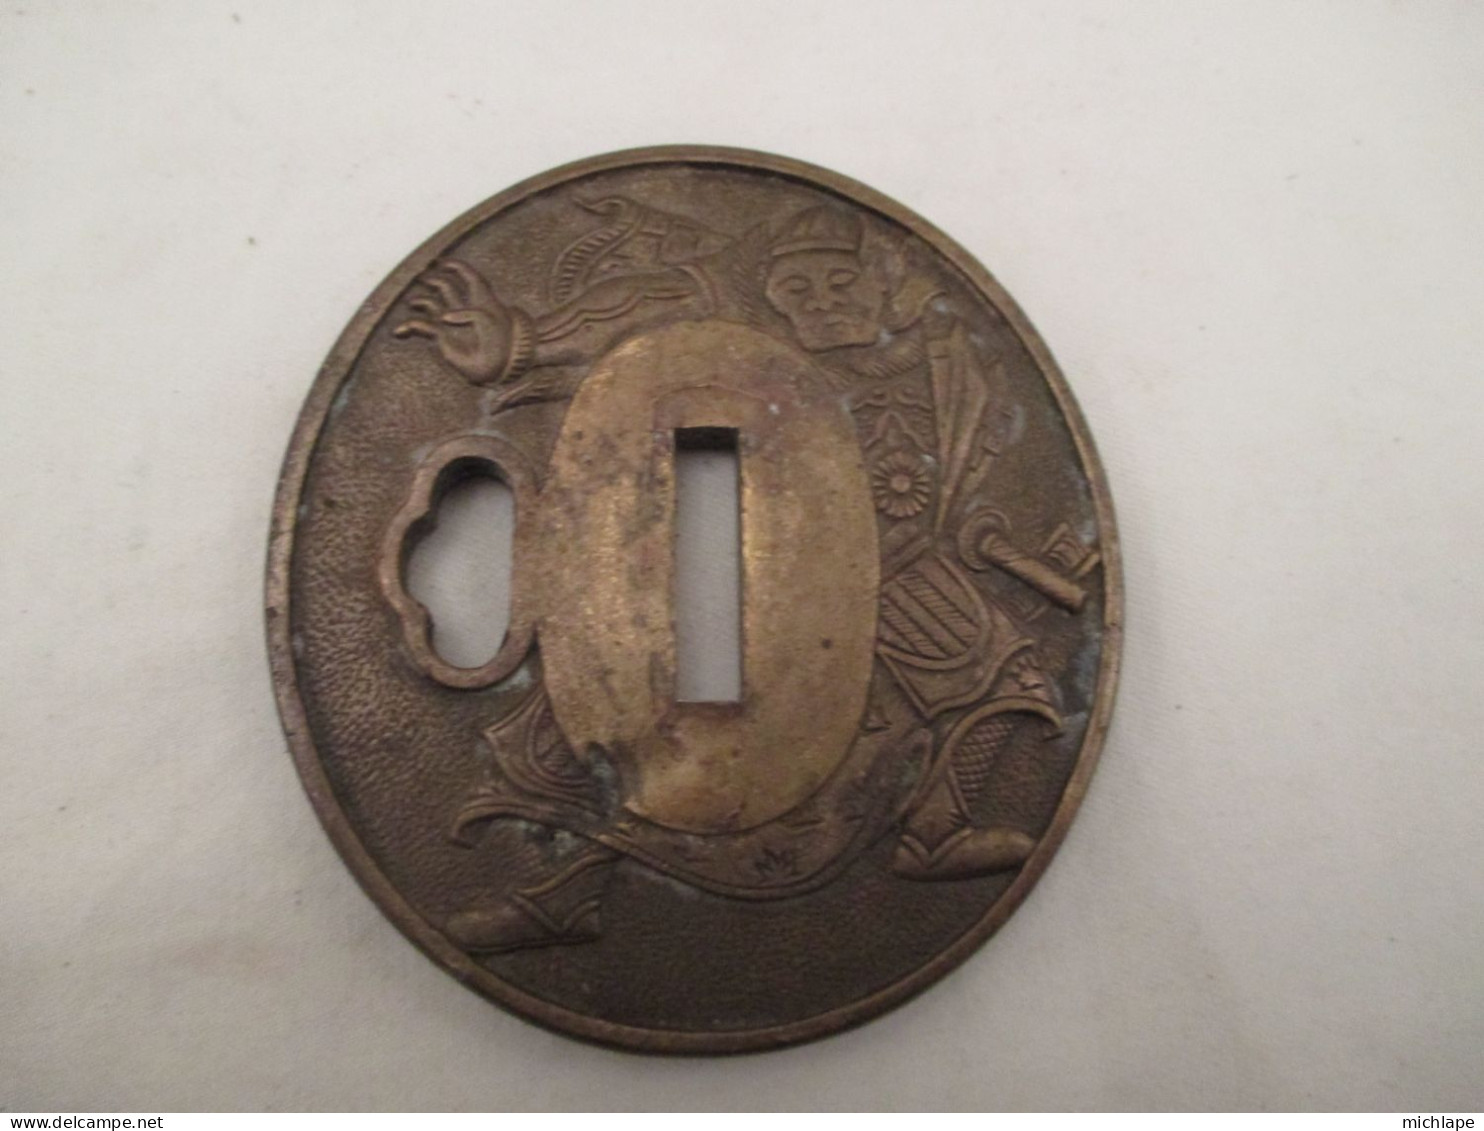 Superbe  Tsuba  Japonais En Bronze  Diametre  75 Mm Sur 70 Mm 120 Gr - Armes Blanches